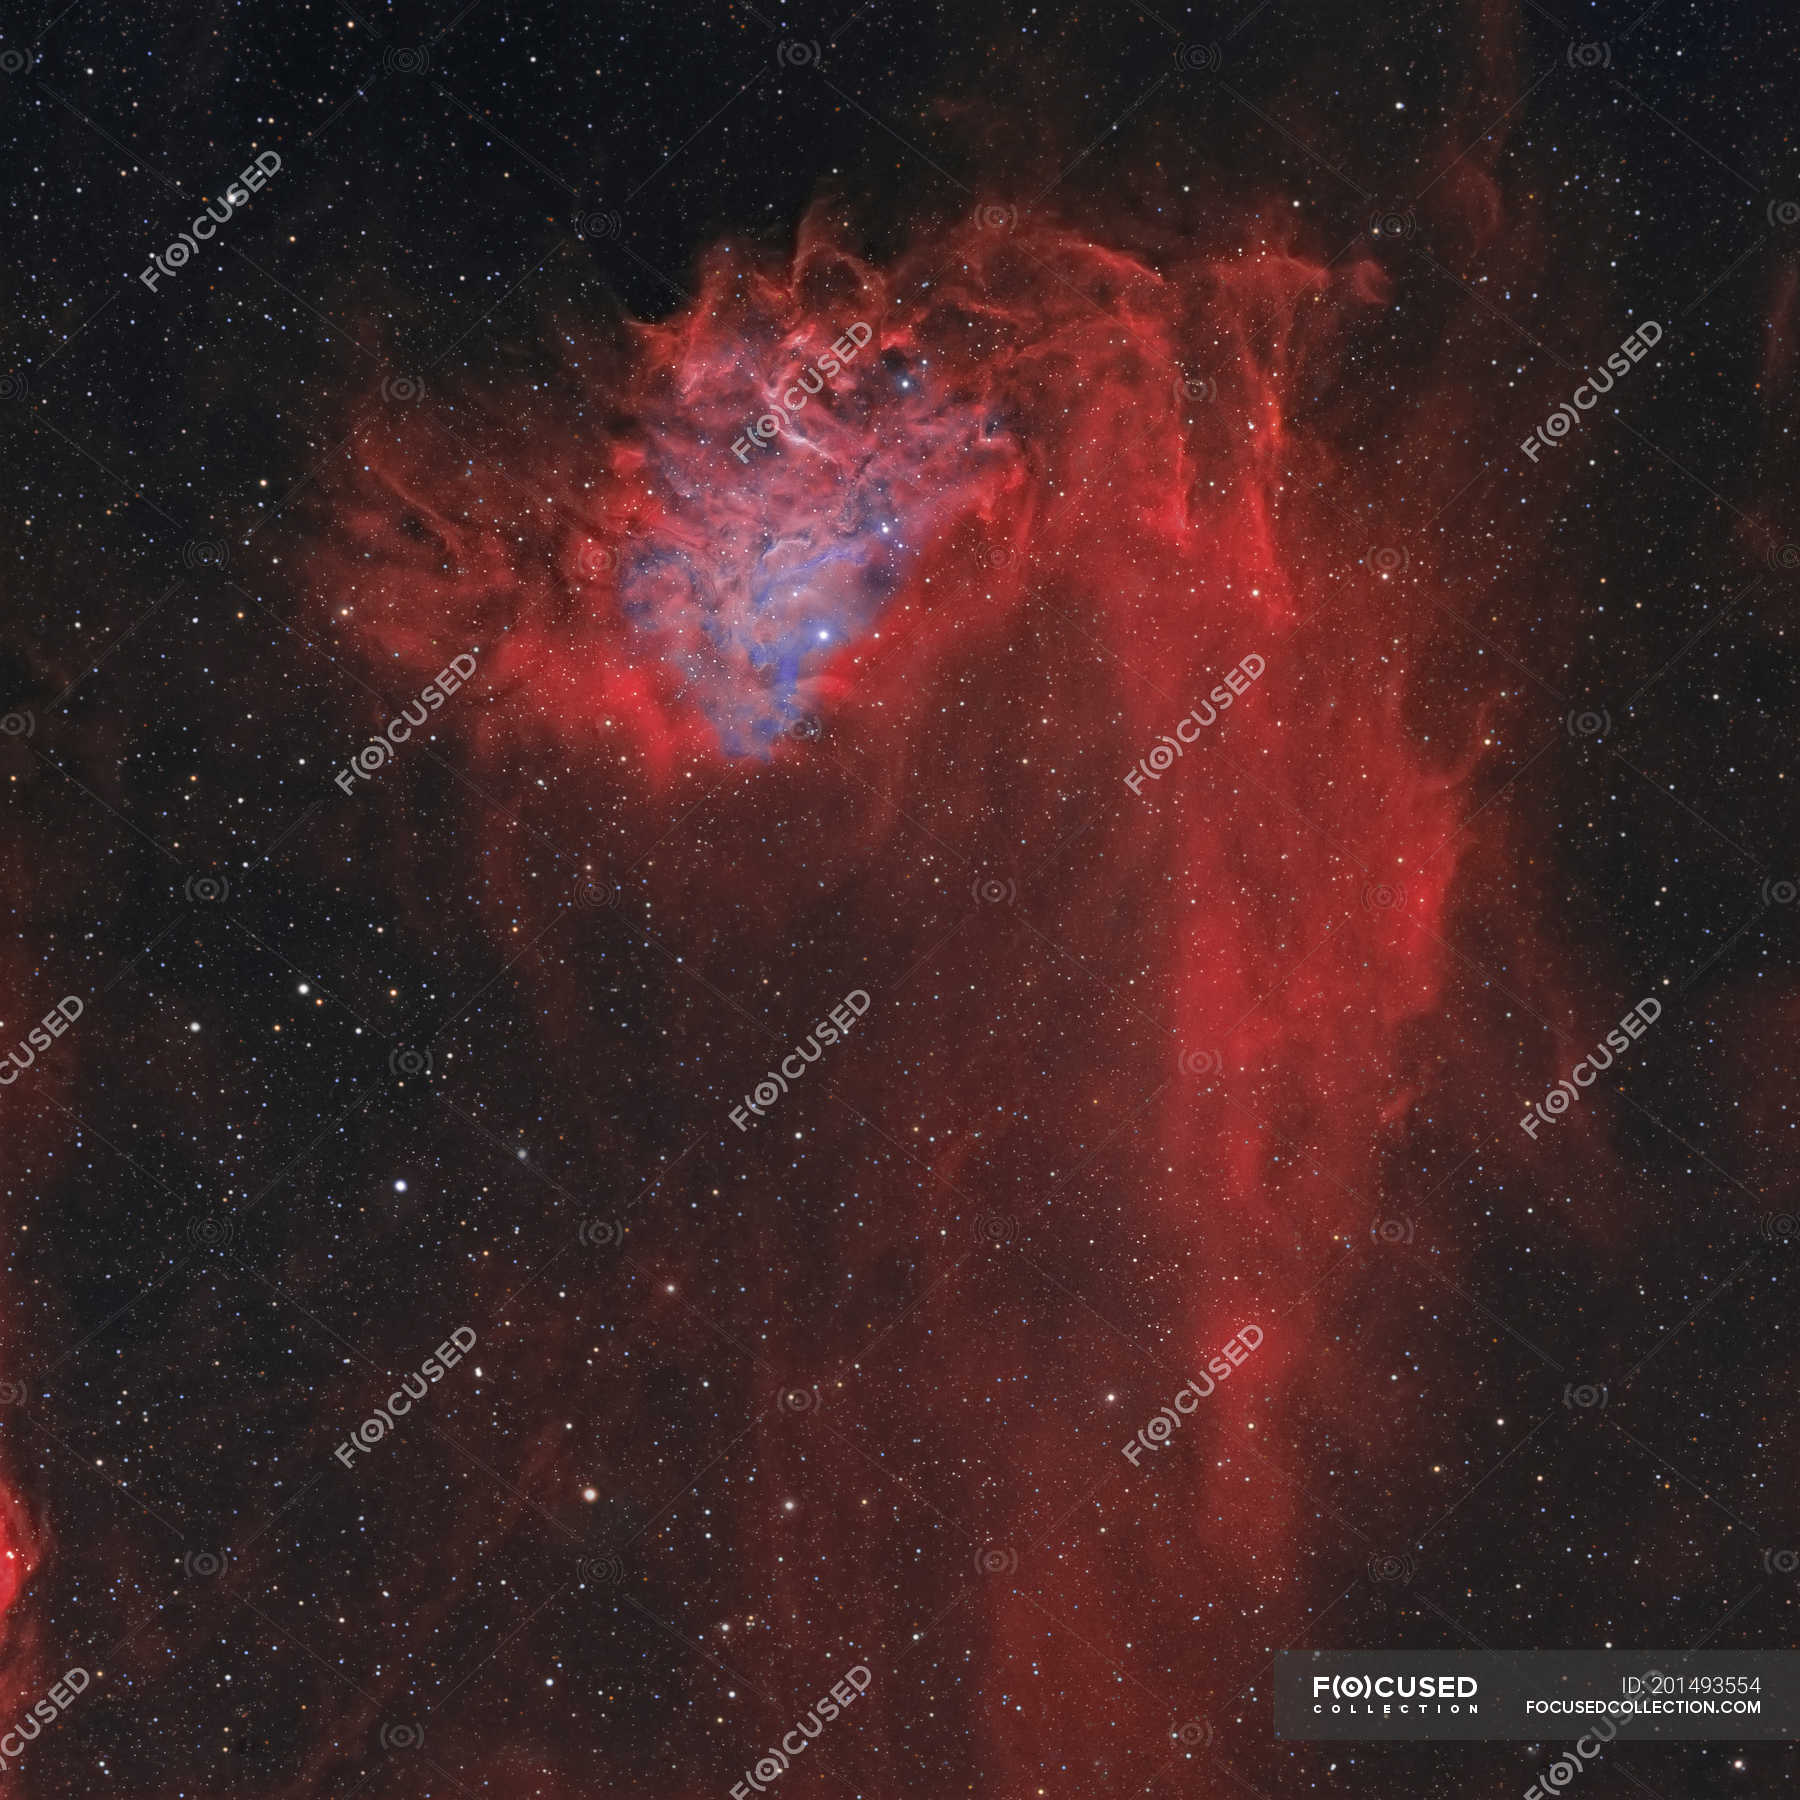 ic 405 nebula